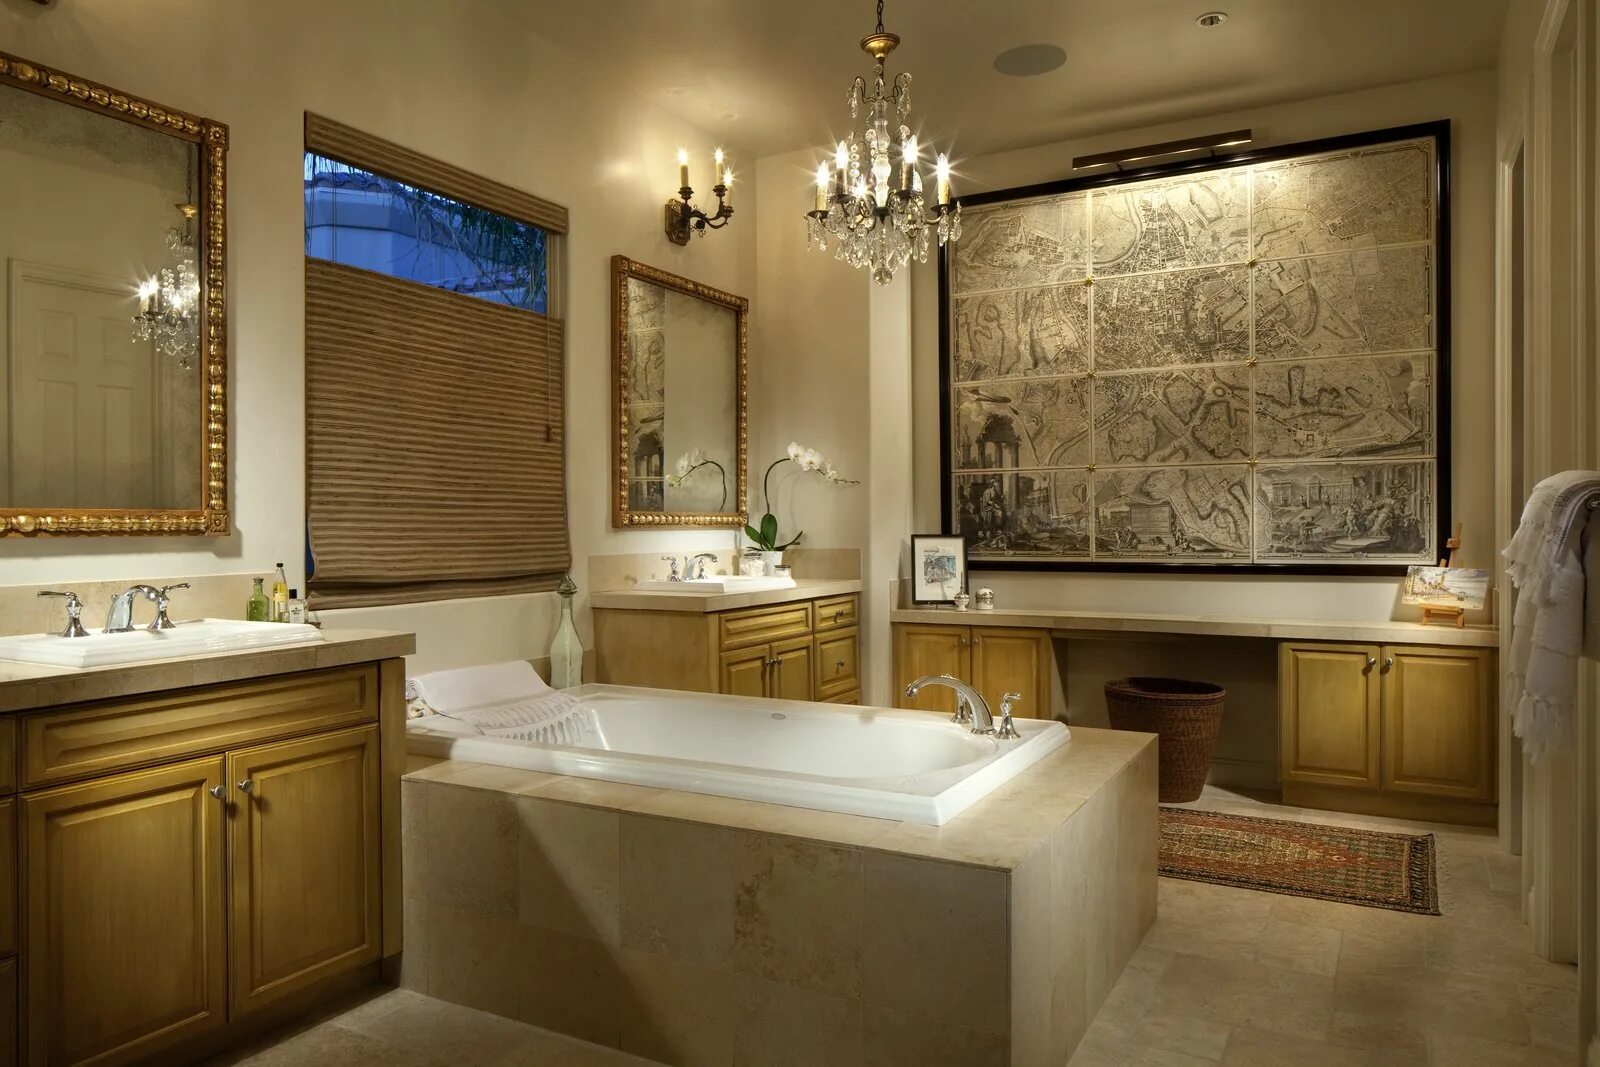 Ванная комната. Красивая ванная комната интерьер. Большая ванная. Ванная комната в элегантном стиле. Красивые светильники в ванную.